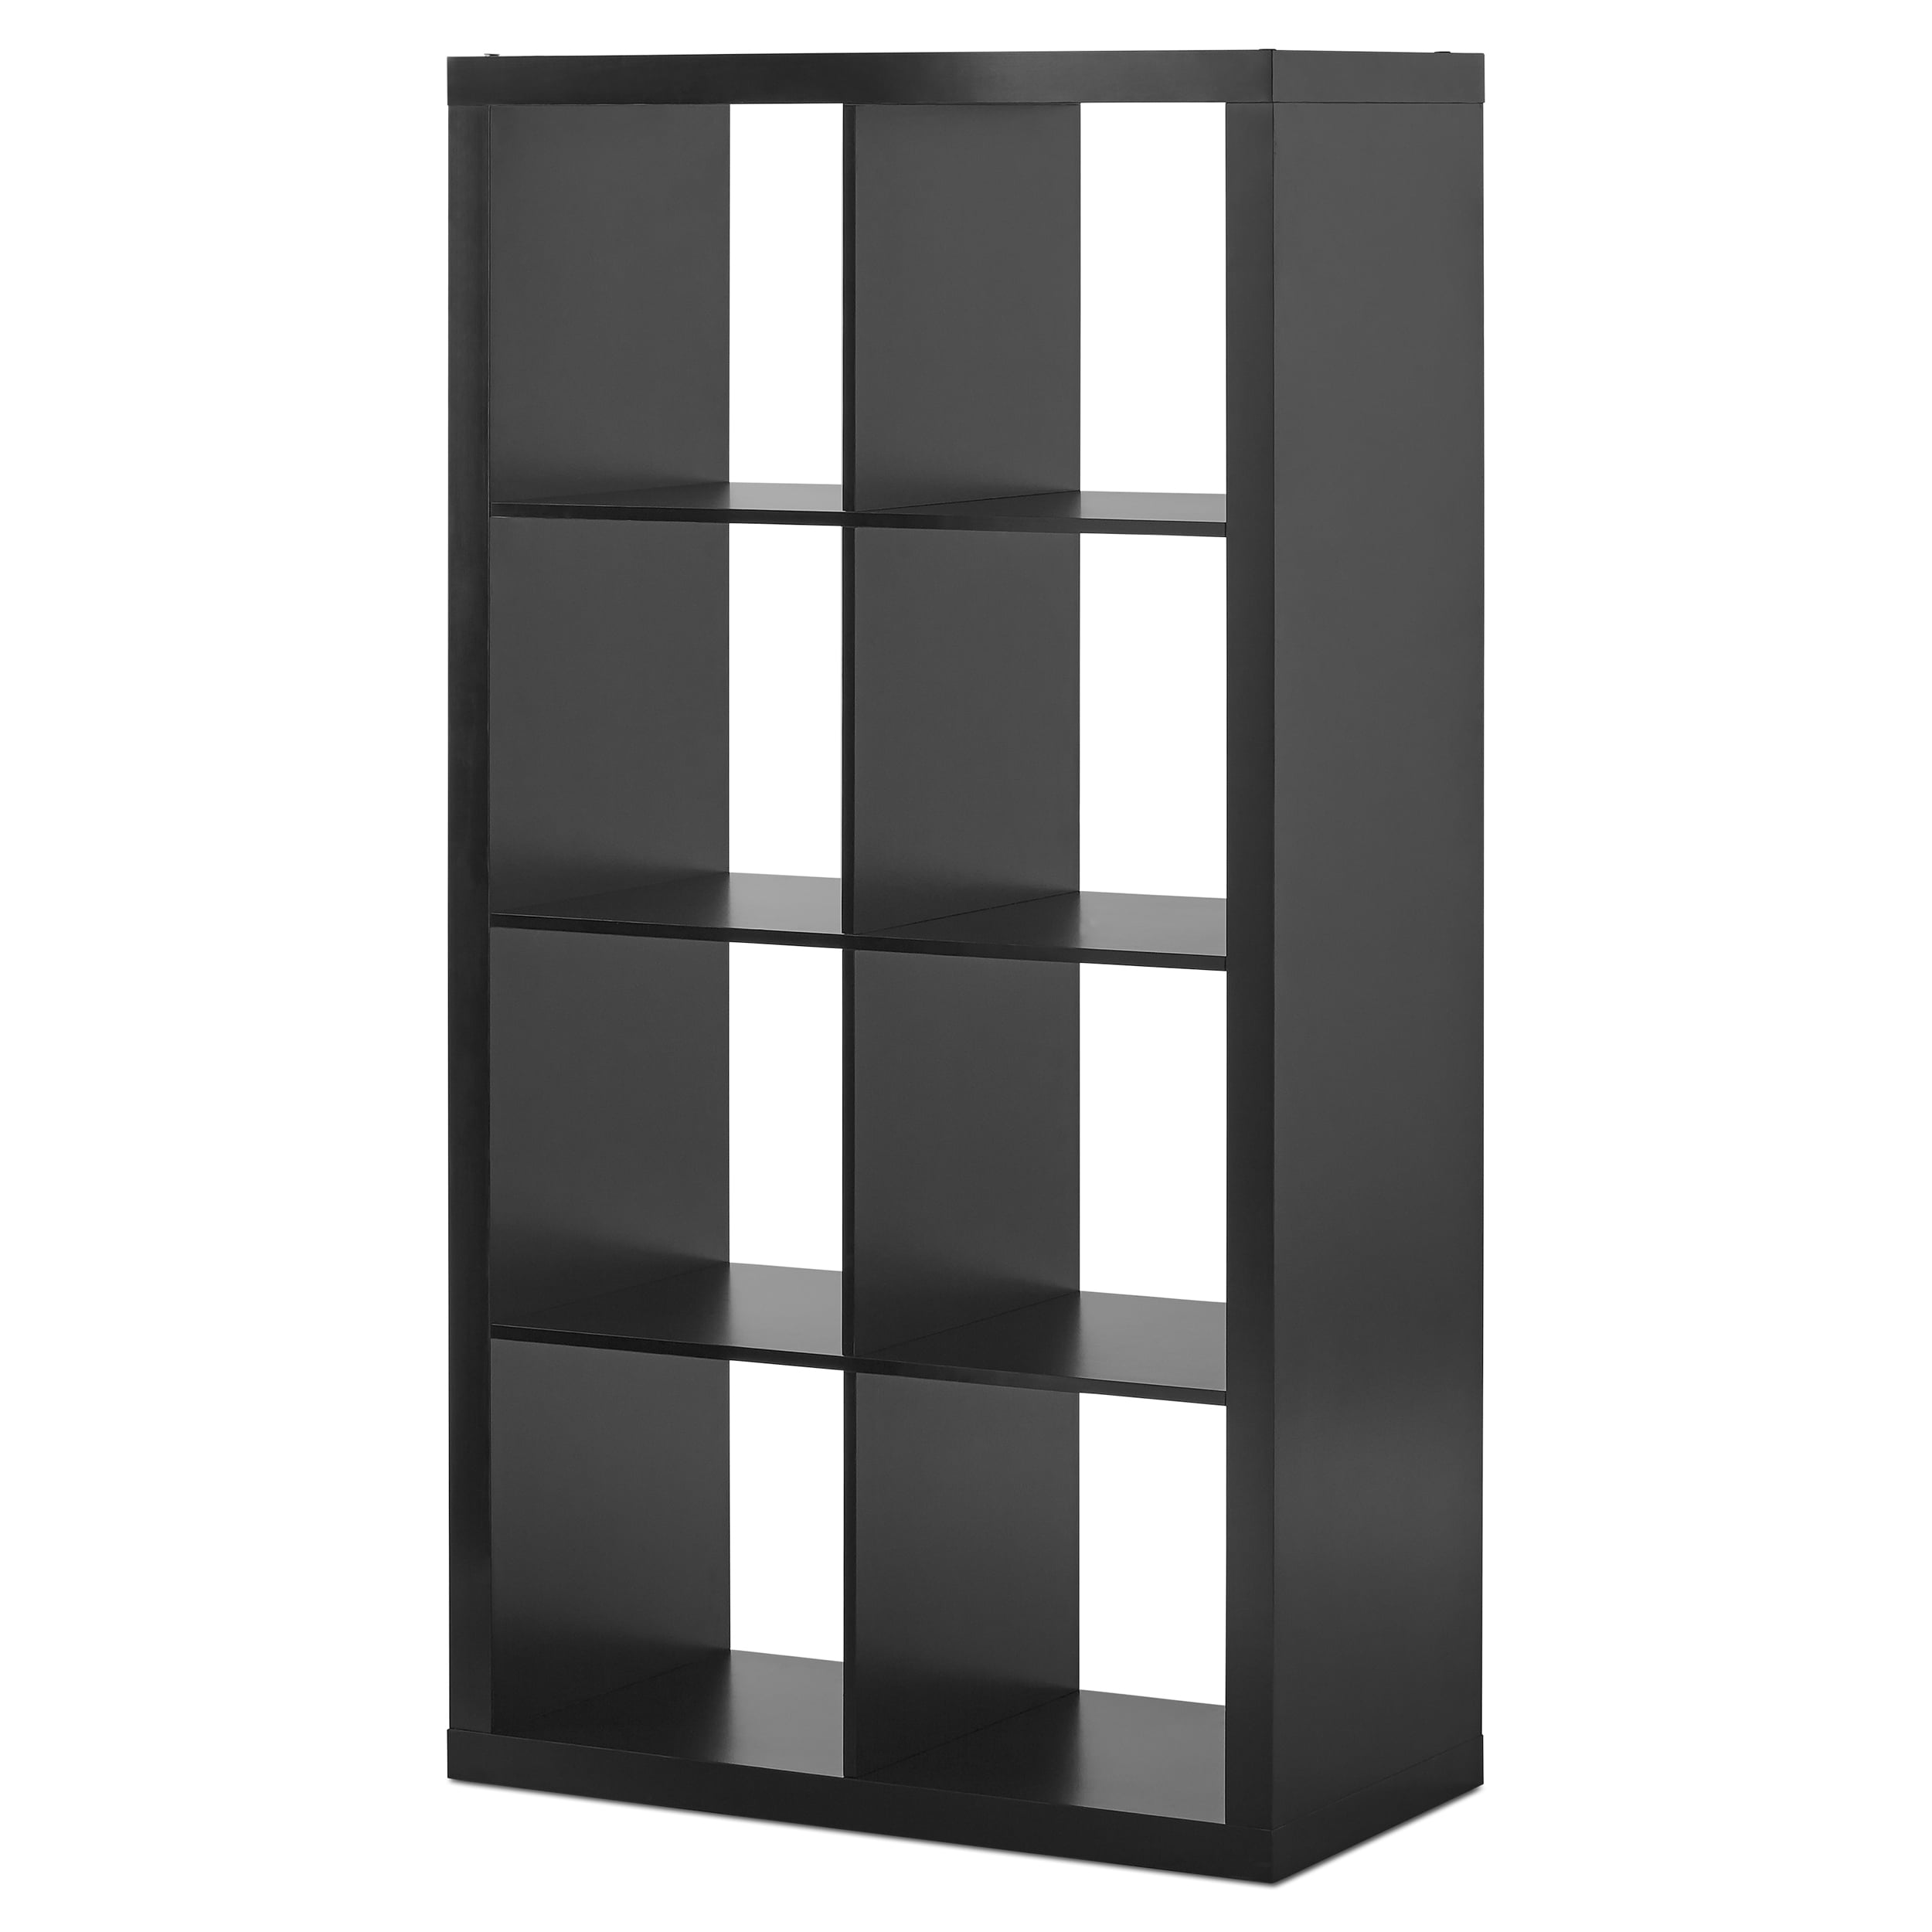 Better Homes & Gardens 8-Cube Storage Organizer, Solid Black